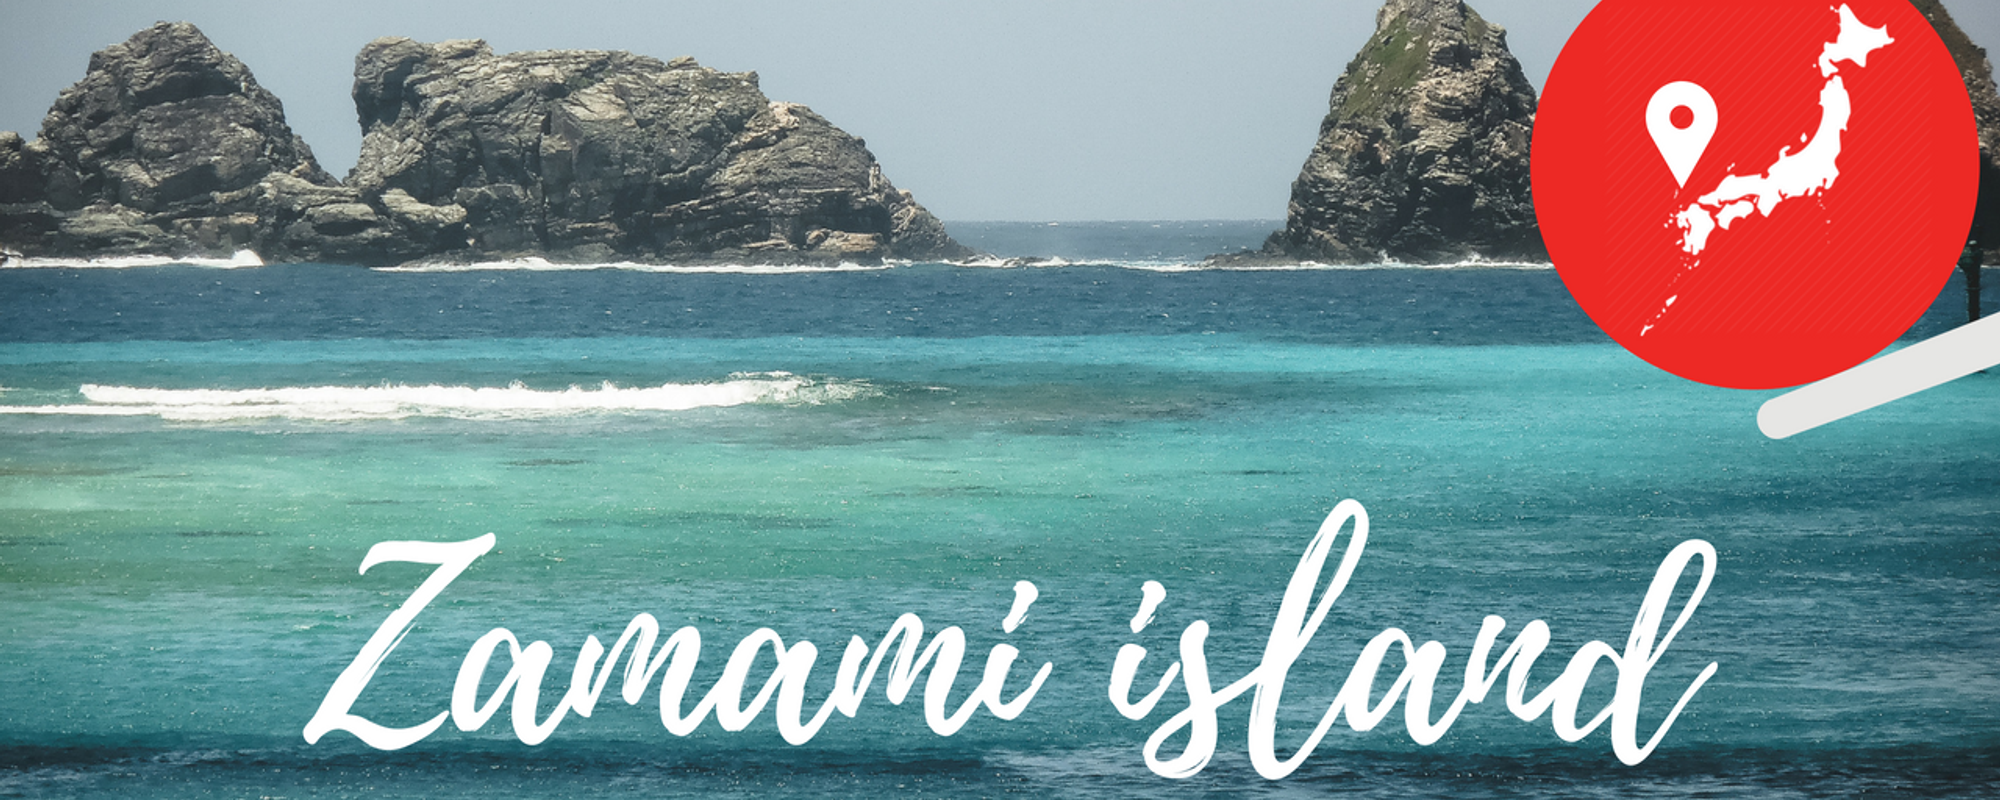 Zamami-jima: When Japan meets the Caribbean